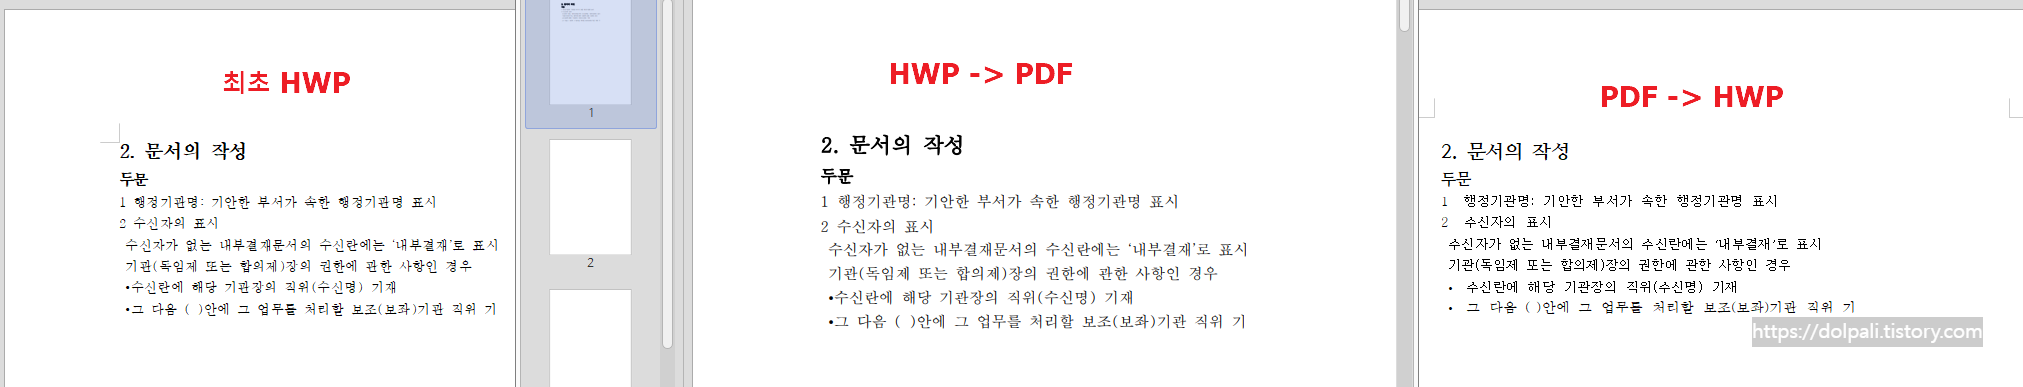 HWP -&gt; PDF -&gt; HWP 변환 결과